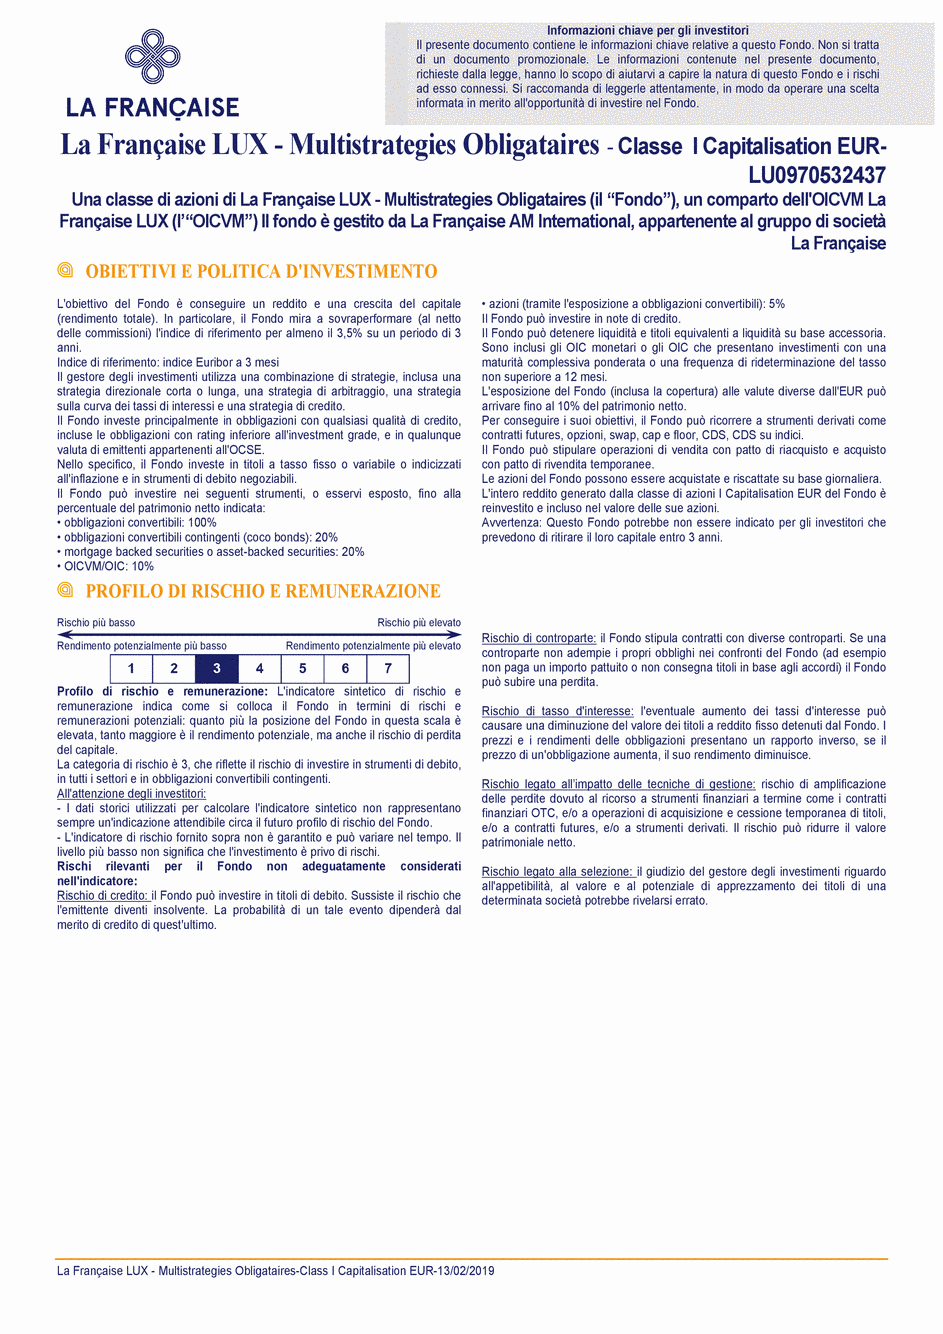 DICI La Française LUX - Multistratégies Obligataires - I (C) EUR - 13/02/2019 - Italien